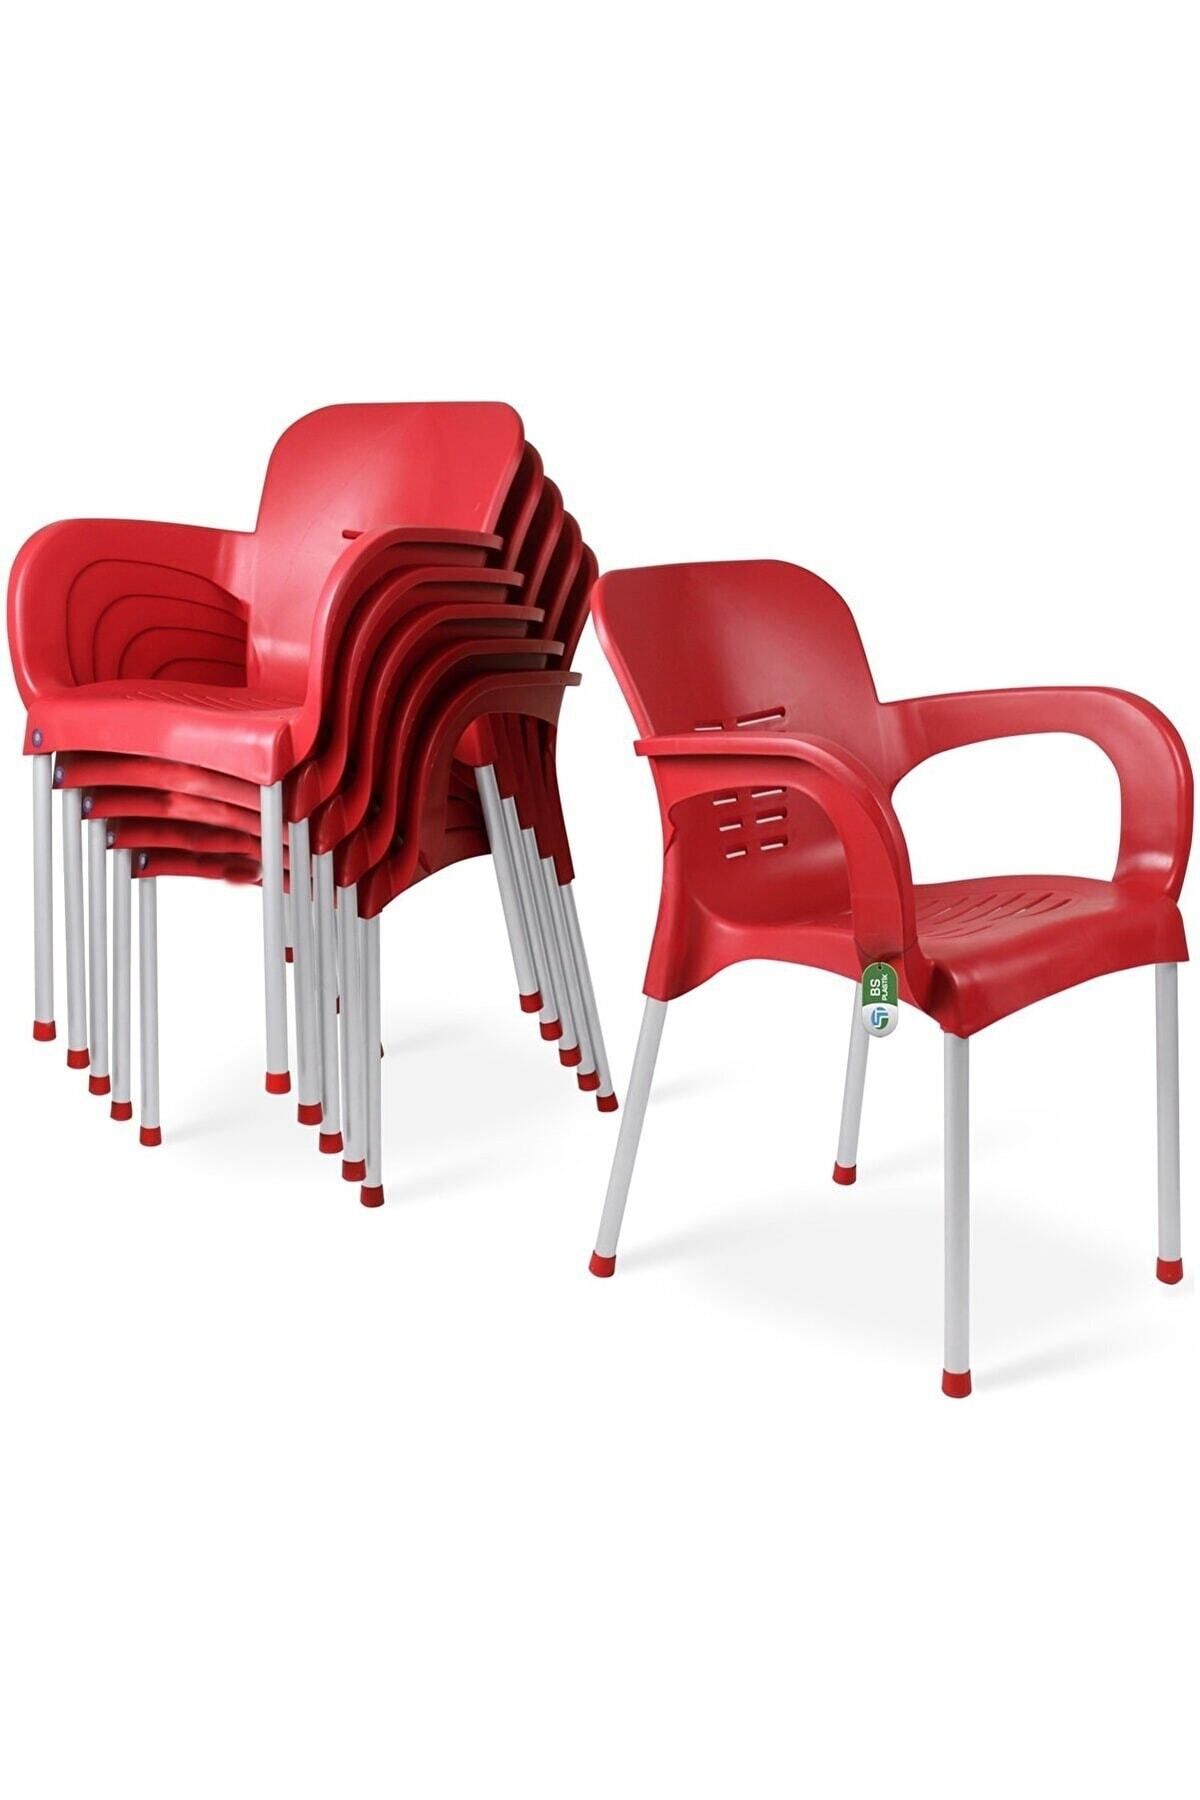 ALMİNA Plastik Sandalye Metal Ayaklı Bahçe Balkon Ve Teras Sandalyesi 4 Adet